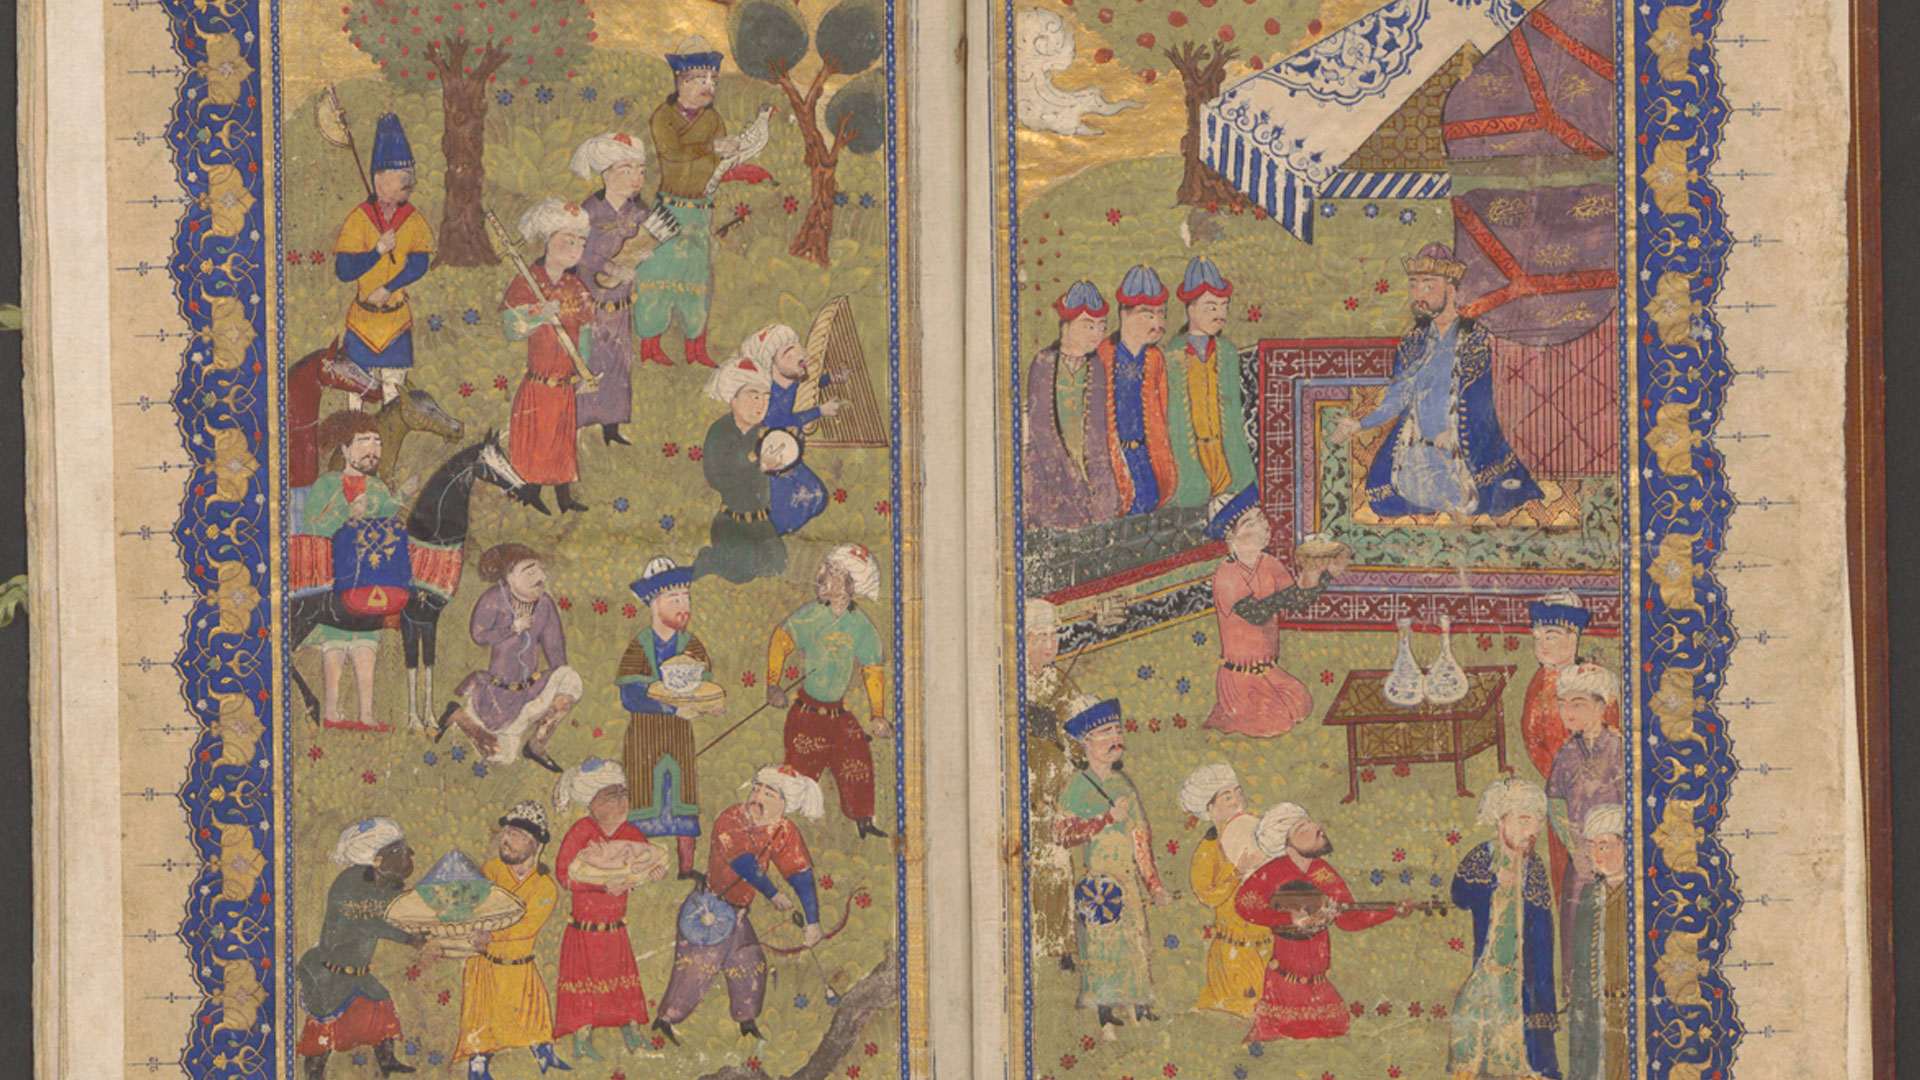 Imagen del Shahnameh, manuscrito persa depositado en la Biblioteca del Palacio Real de Madrid y que ya ha sido digitalizado.